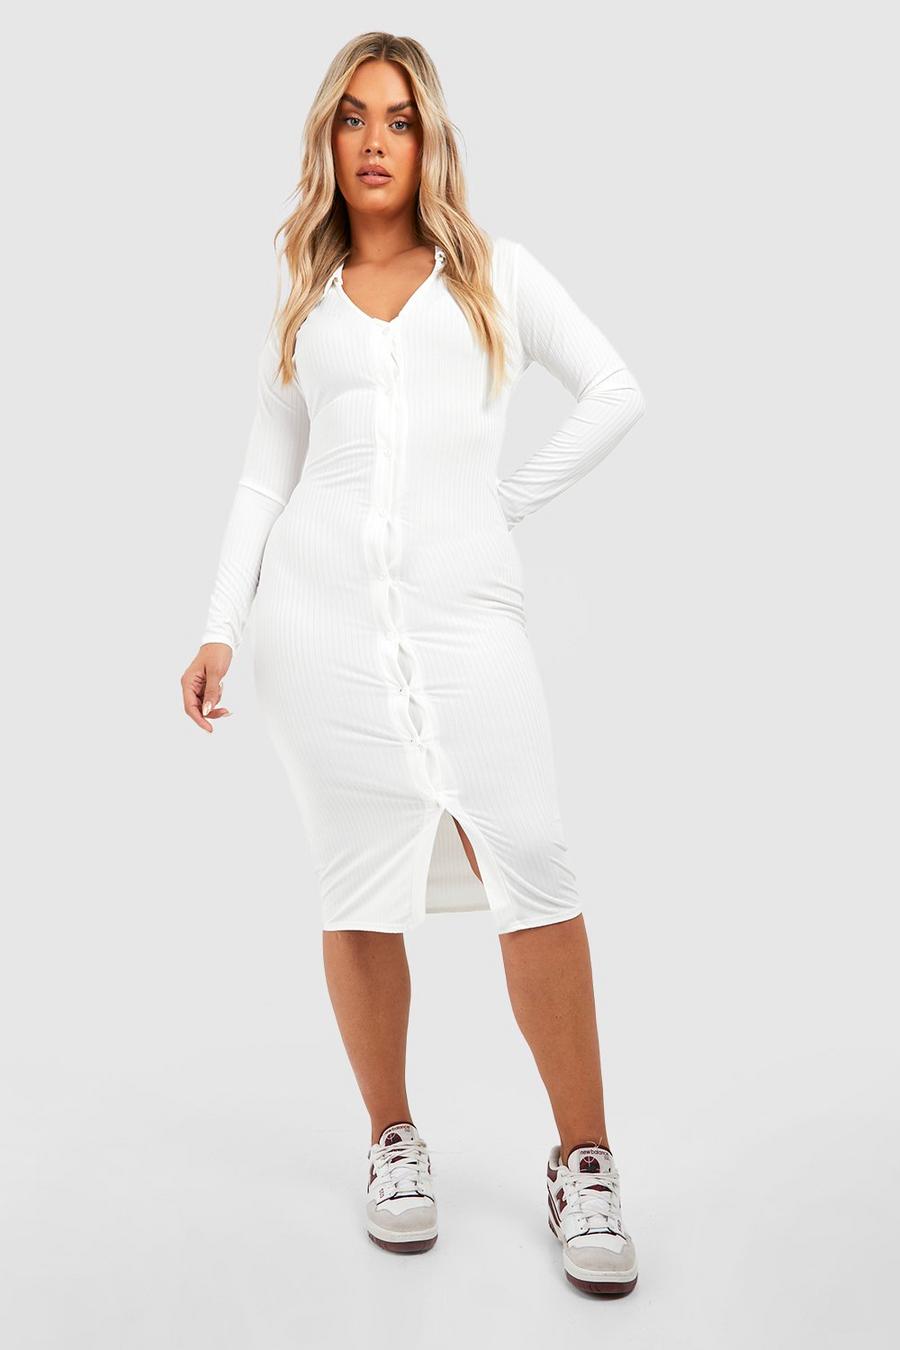 Vestito midi Plus Size in maglia morbida con colletto e bottoni, Cream bianco image number 1